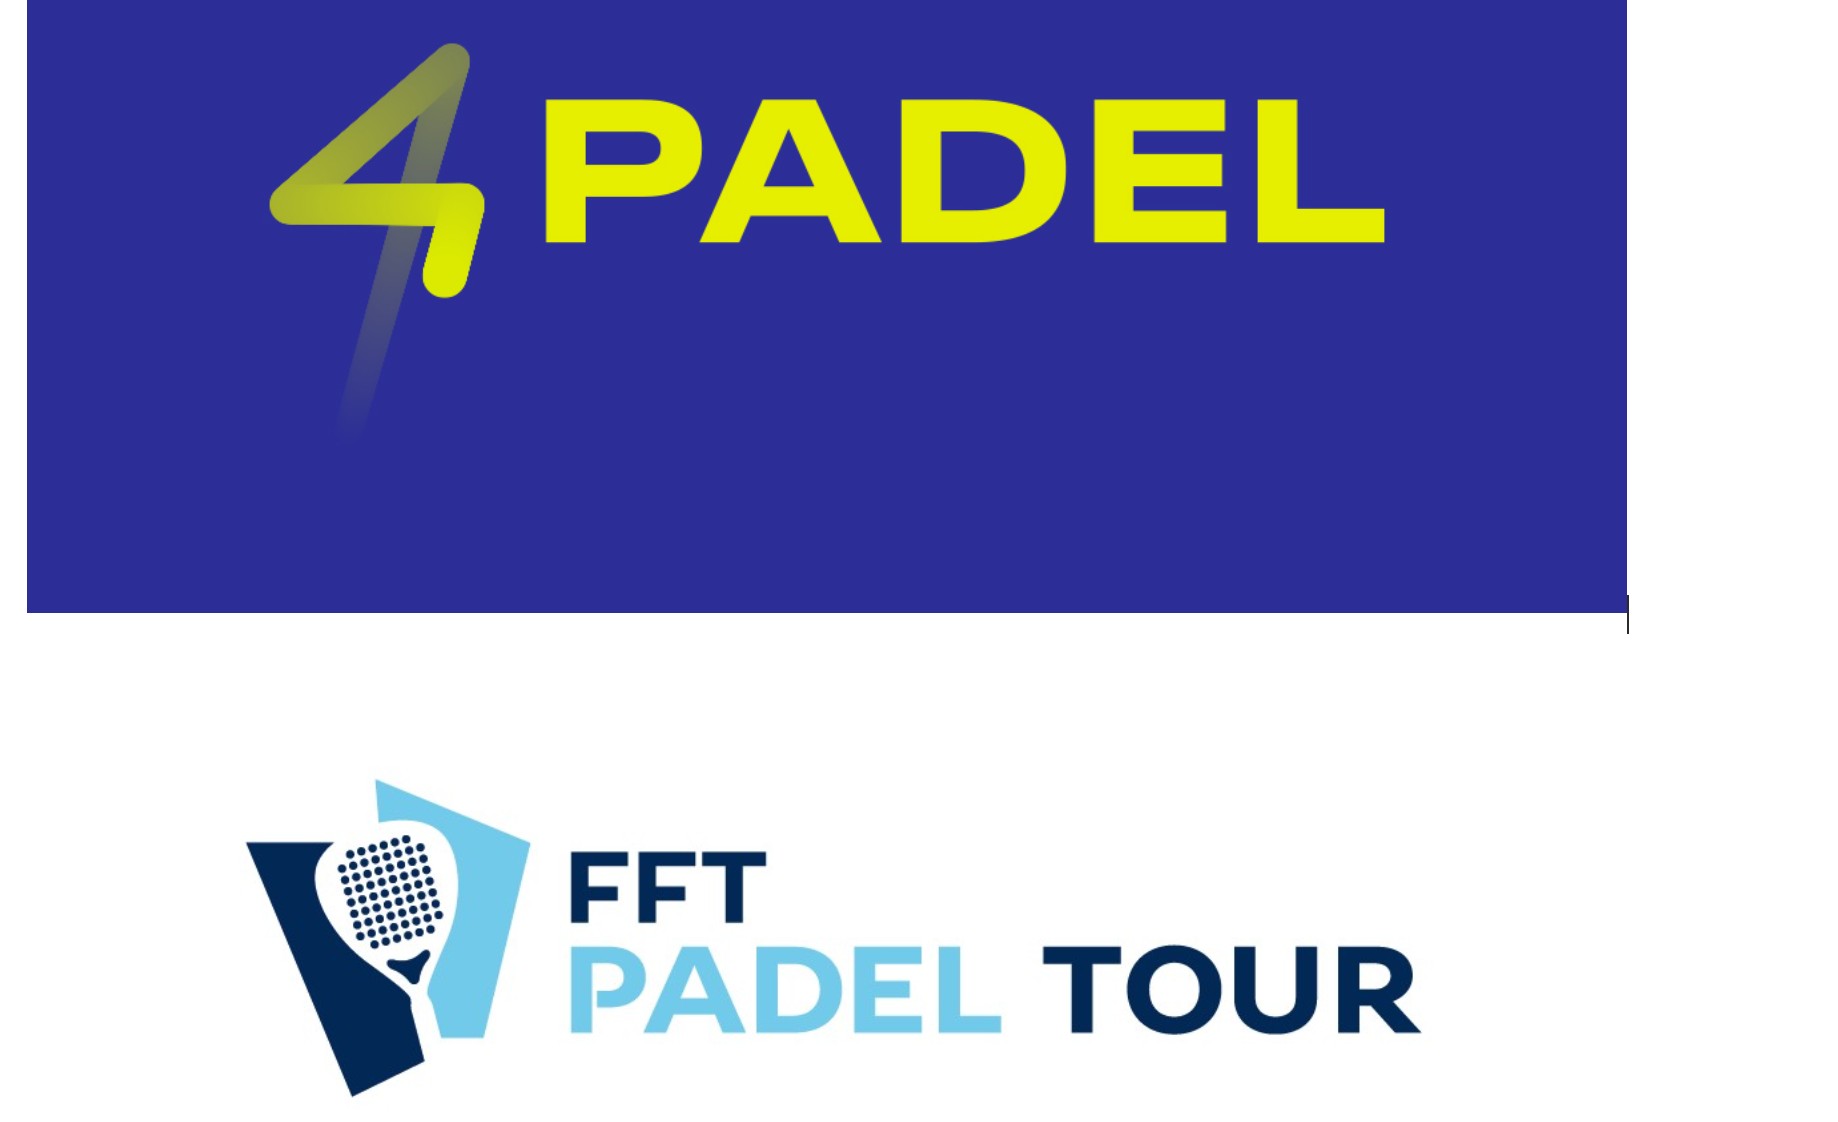 4PADEL refuerza su relación con la FFT a través de la PADEL TOUR 2019